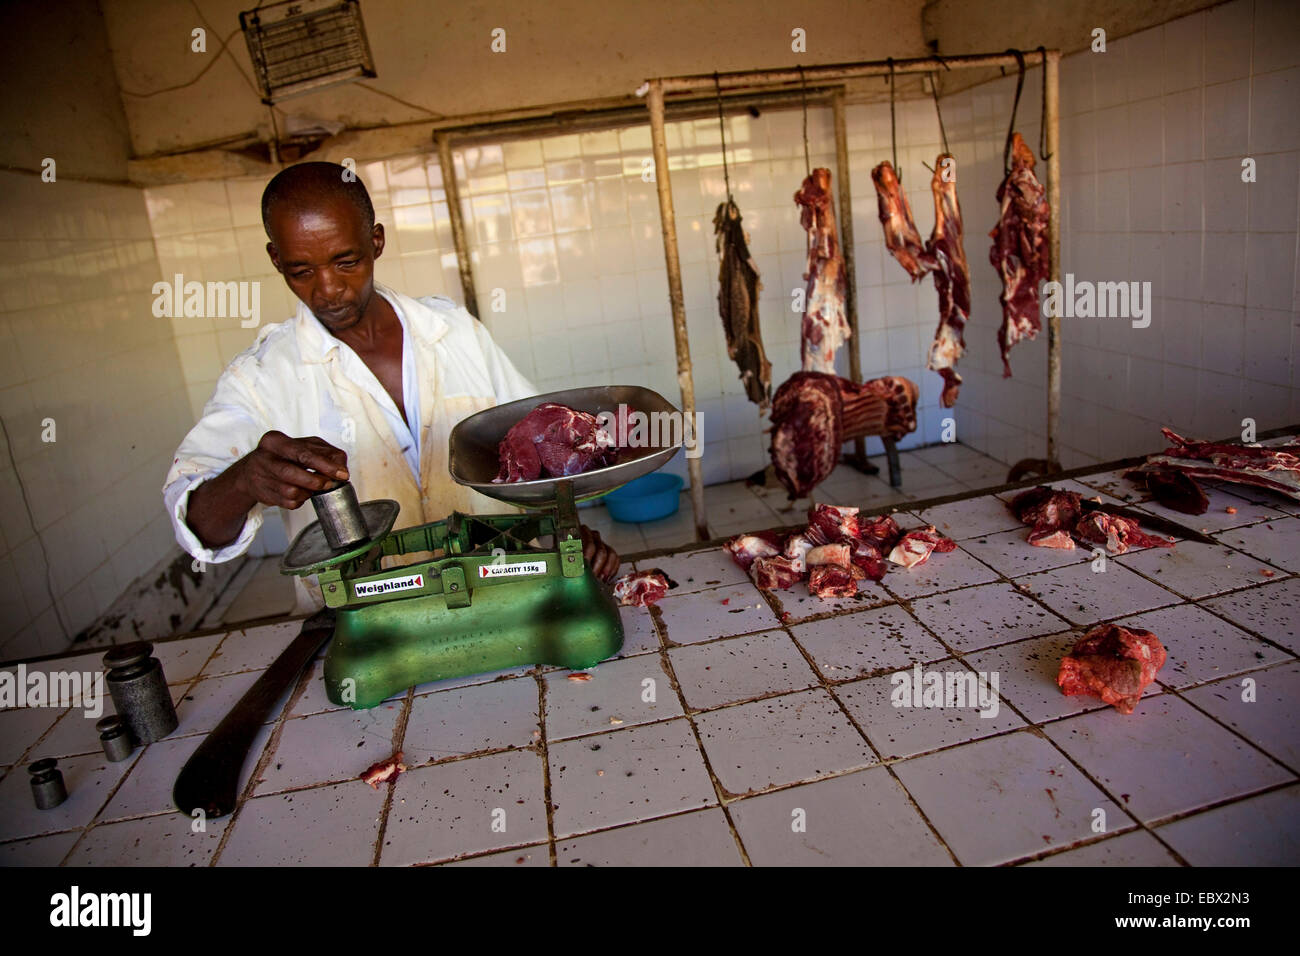 La viande de boucherie pesant sur une échelle, le Rwanda, Kigali, Nyamirambo Banque D'Images